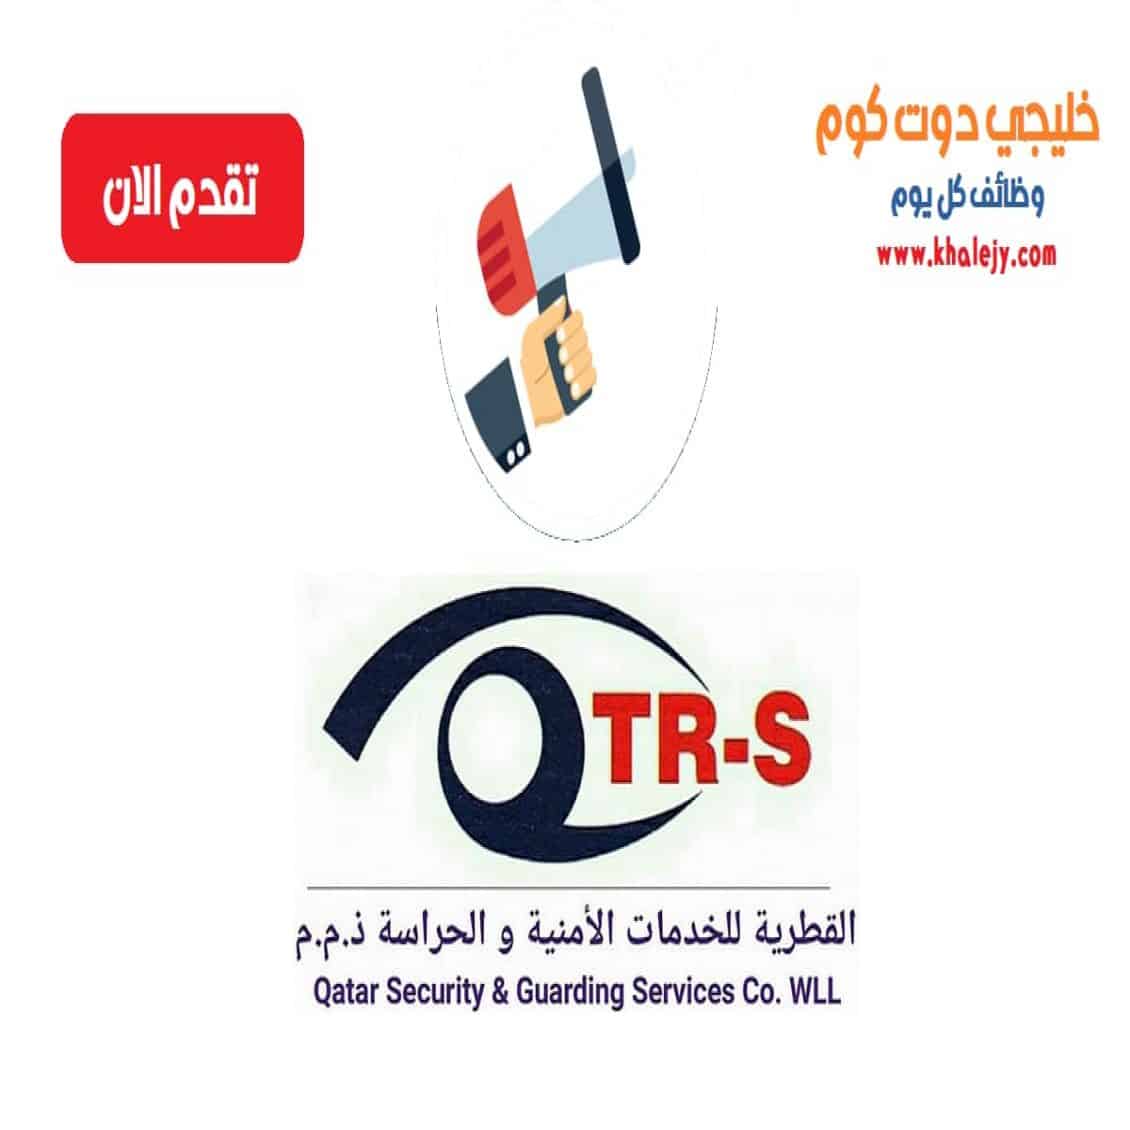 وظائف الشركة القطرية للخدمات الامنية والحراسة قطر